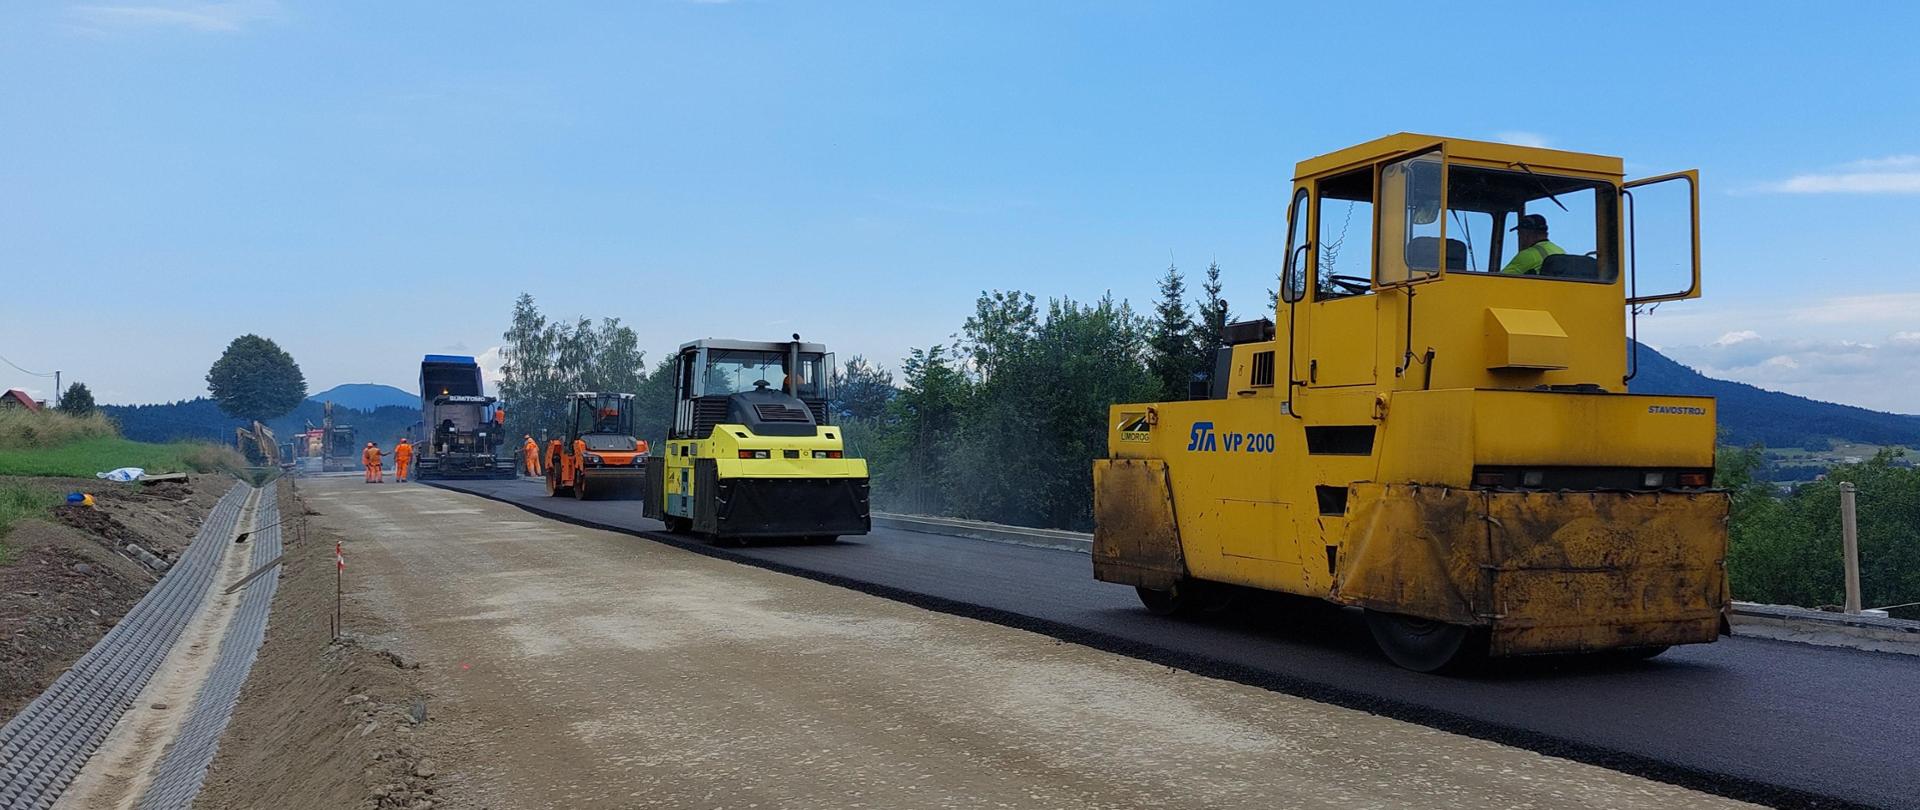 walce drogowe utwardzają asfalt na odbudowywanej drodze krajowej nr 28 w Kasinie Wielkiej